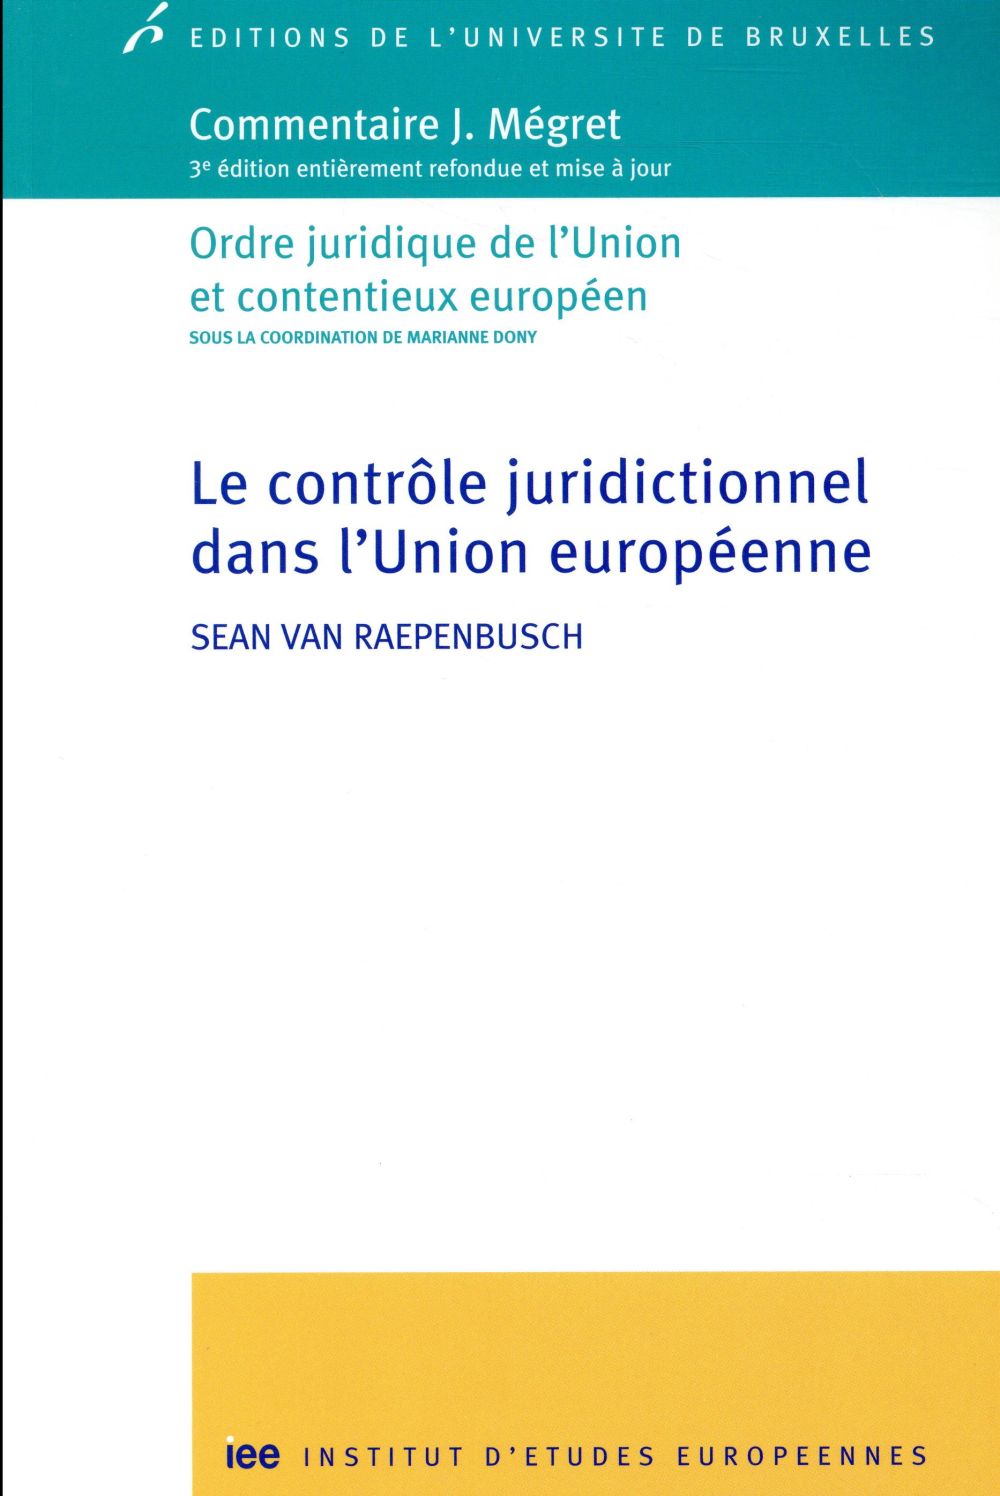 LE CONTROLE JURIDICTIONNEL DANS L'UNION EUROPEENNE